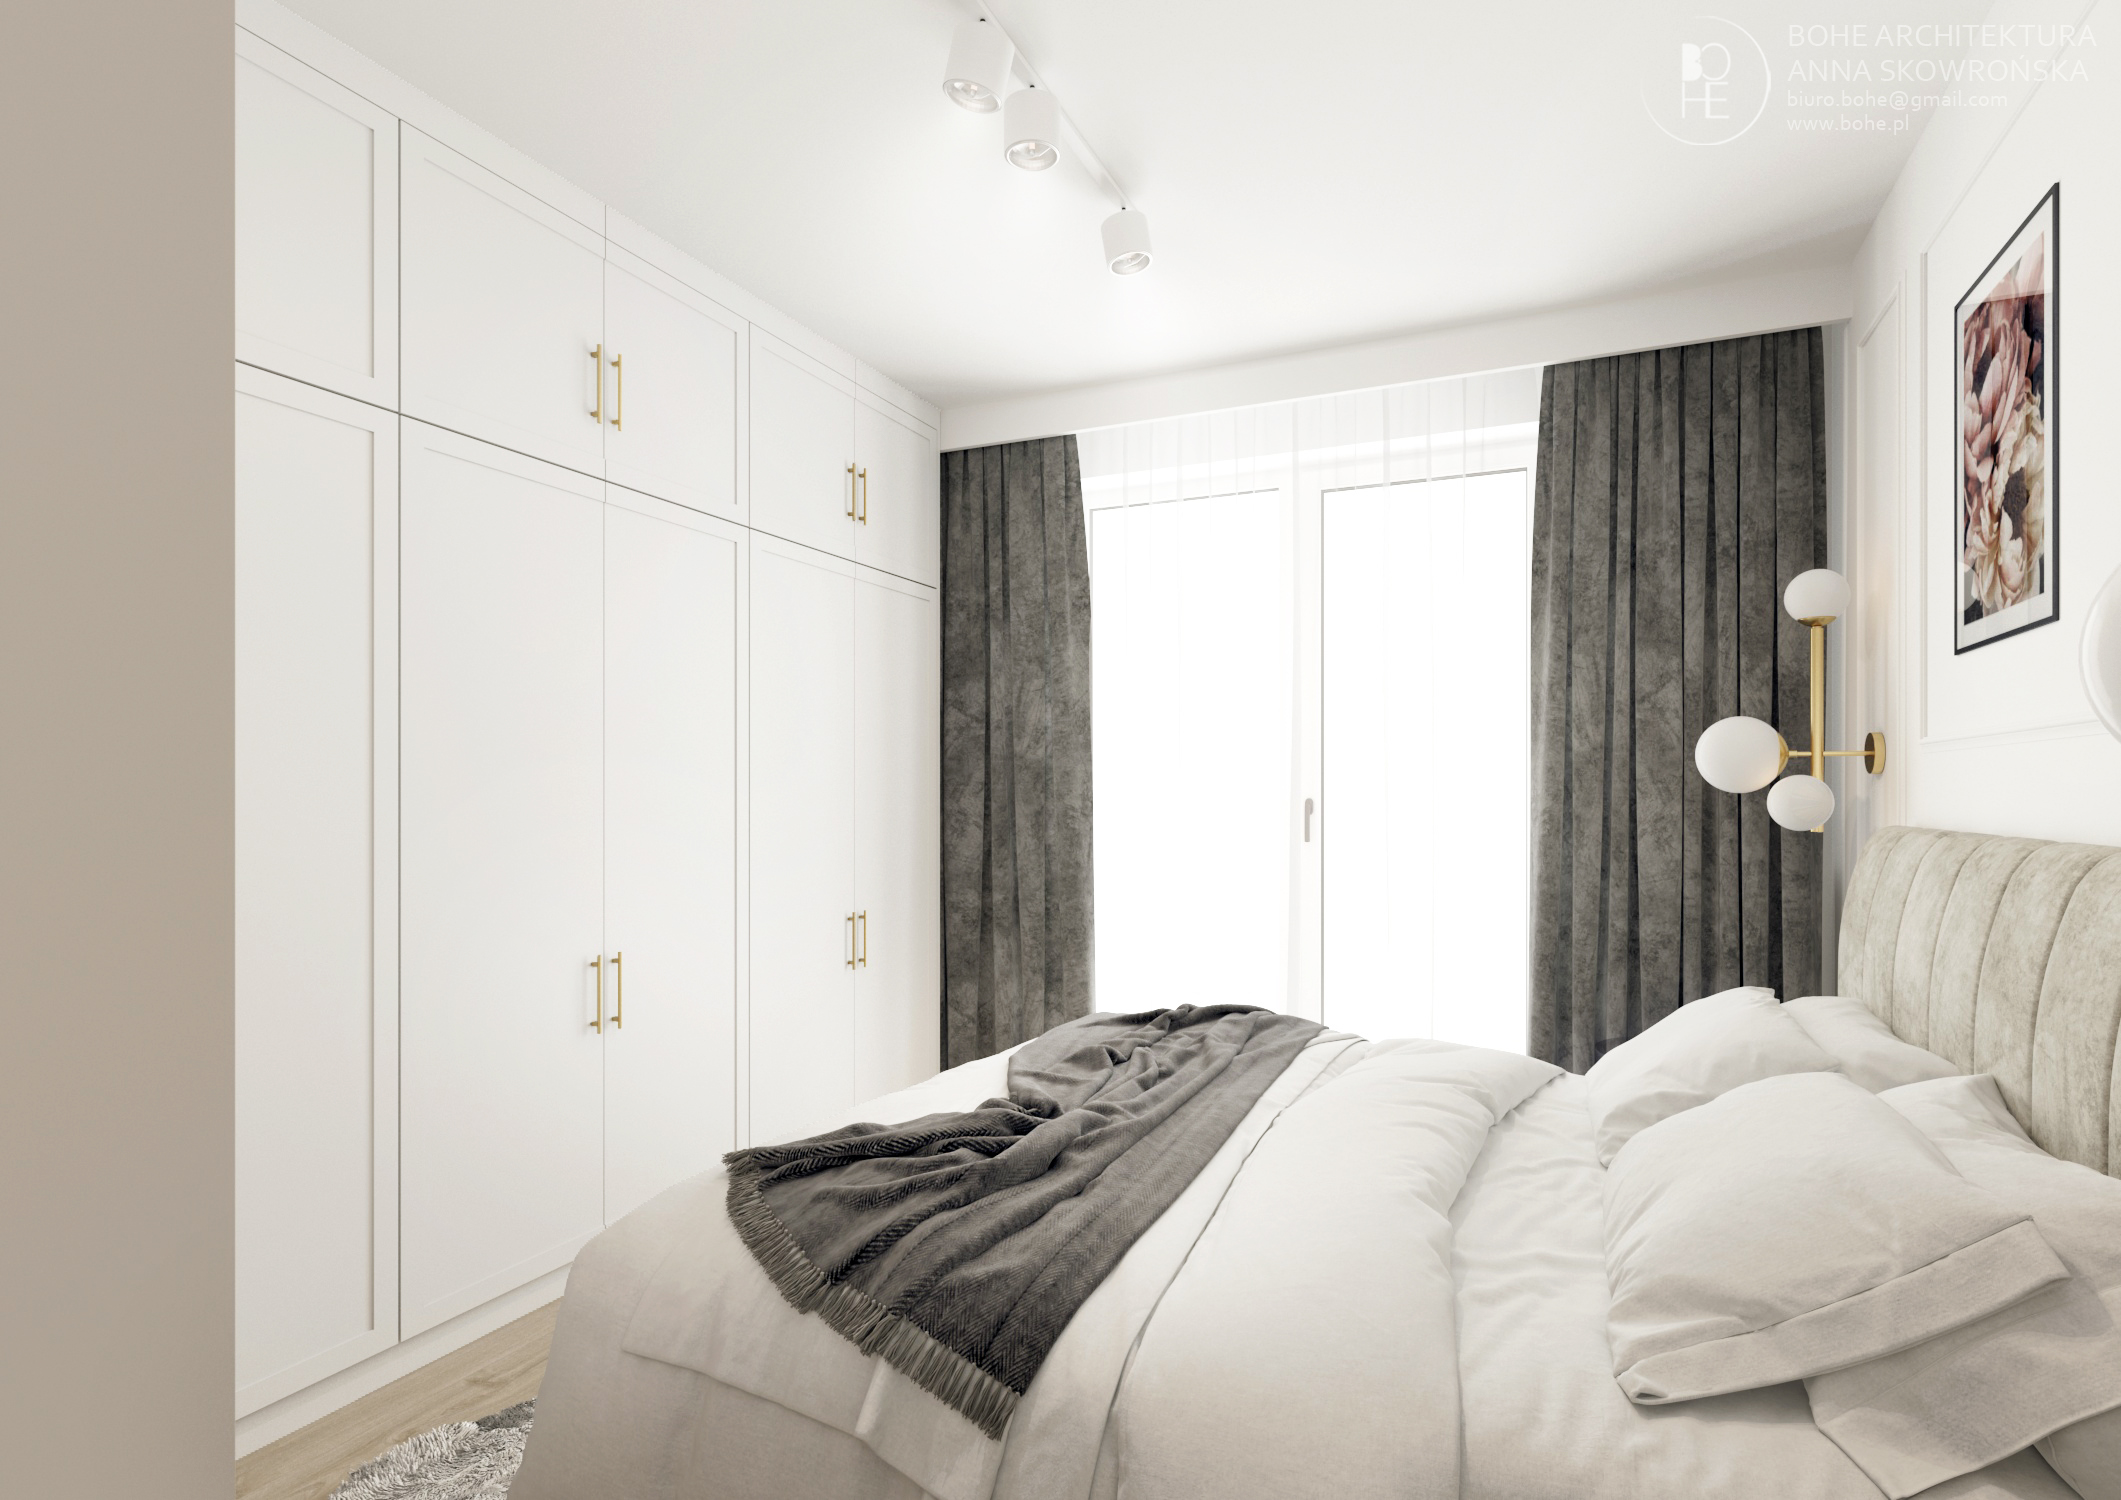 biała sypialnia oświetlenie szynowe szare zasłony duże łóżko biała szafa